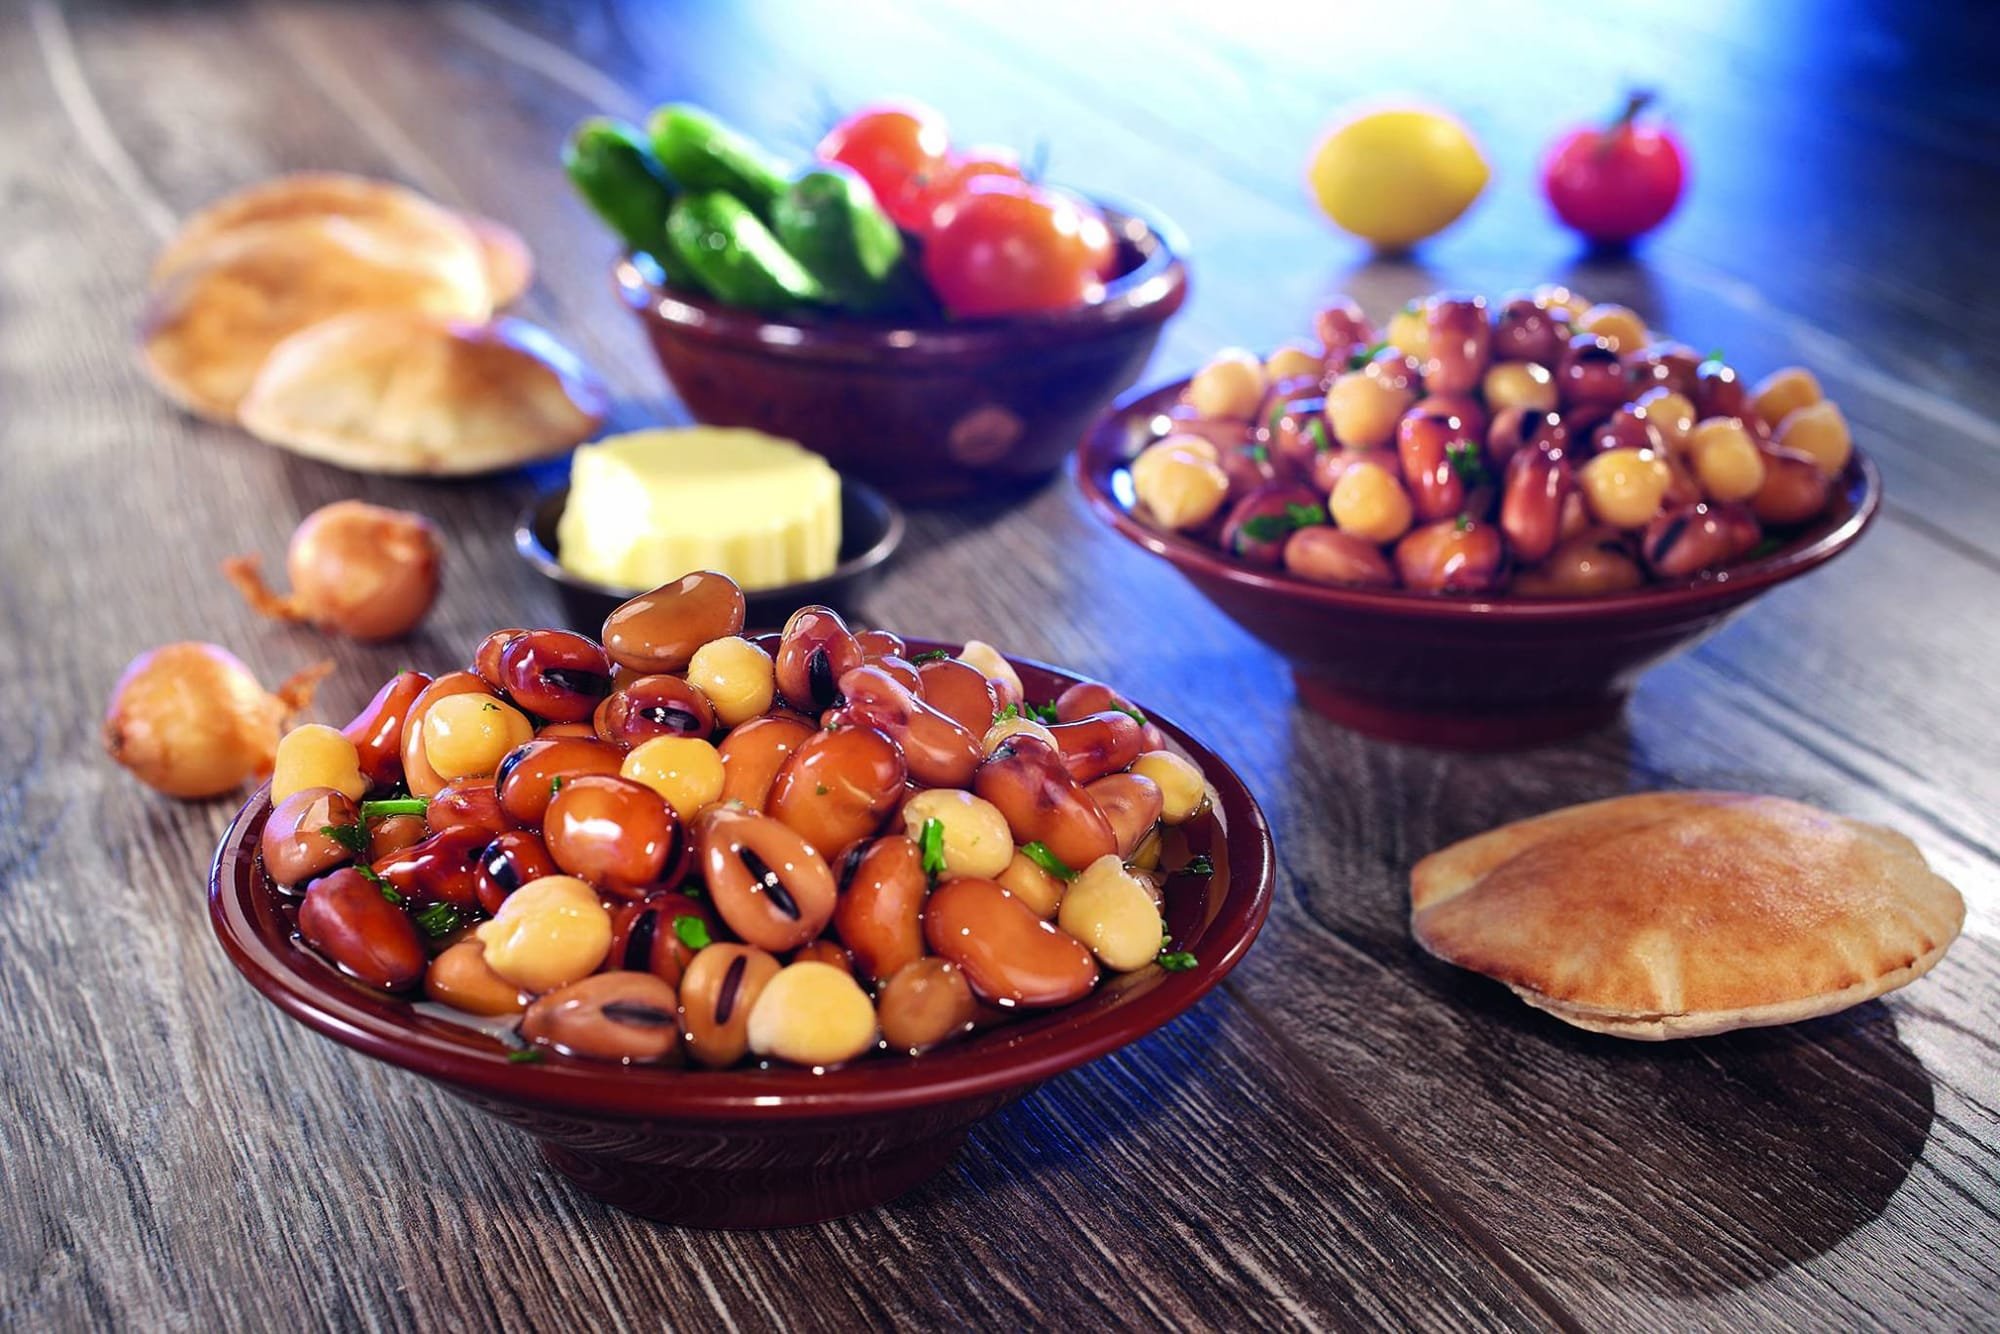 سحور رمضان.. فوائد "طبق الفول".. يحميك من الجوع وأمراض القلب